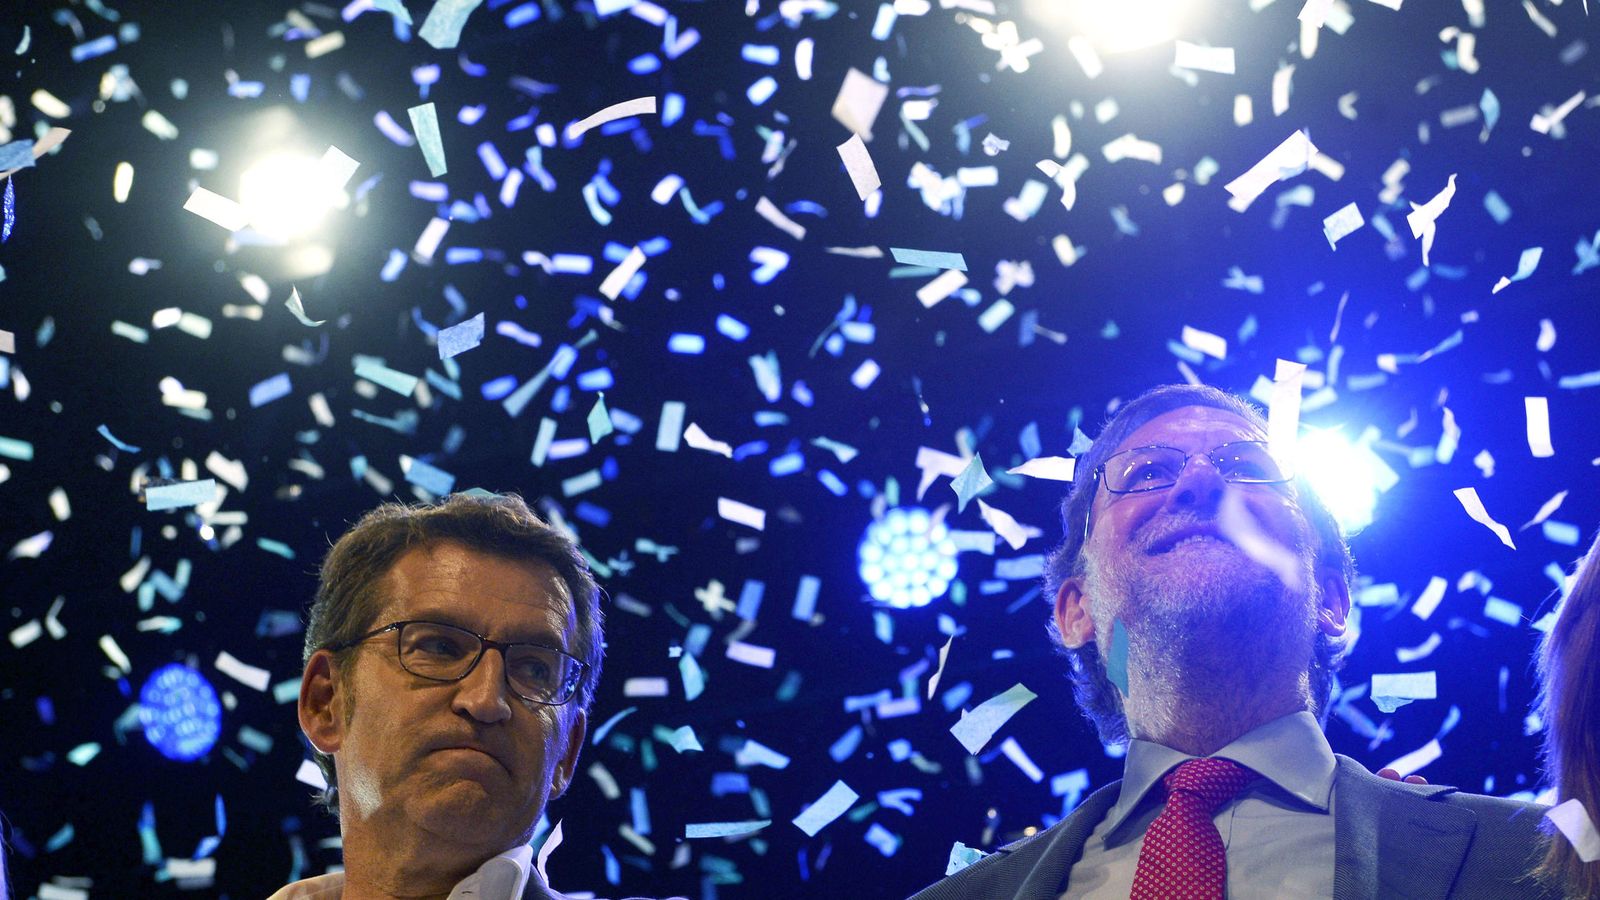 Noticias de Galicia: Feijóo gana y da munición a Rajoy ante la debacle de  Sánchez en Galicia y País Vasco